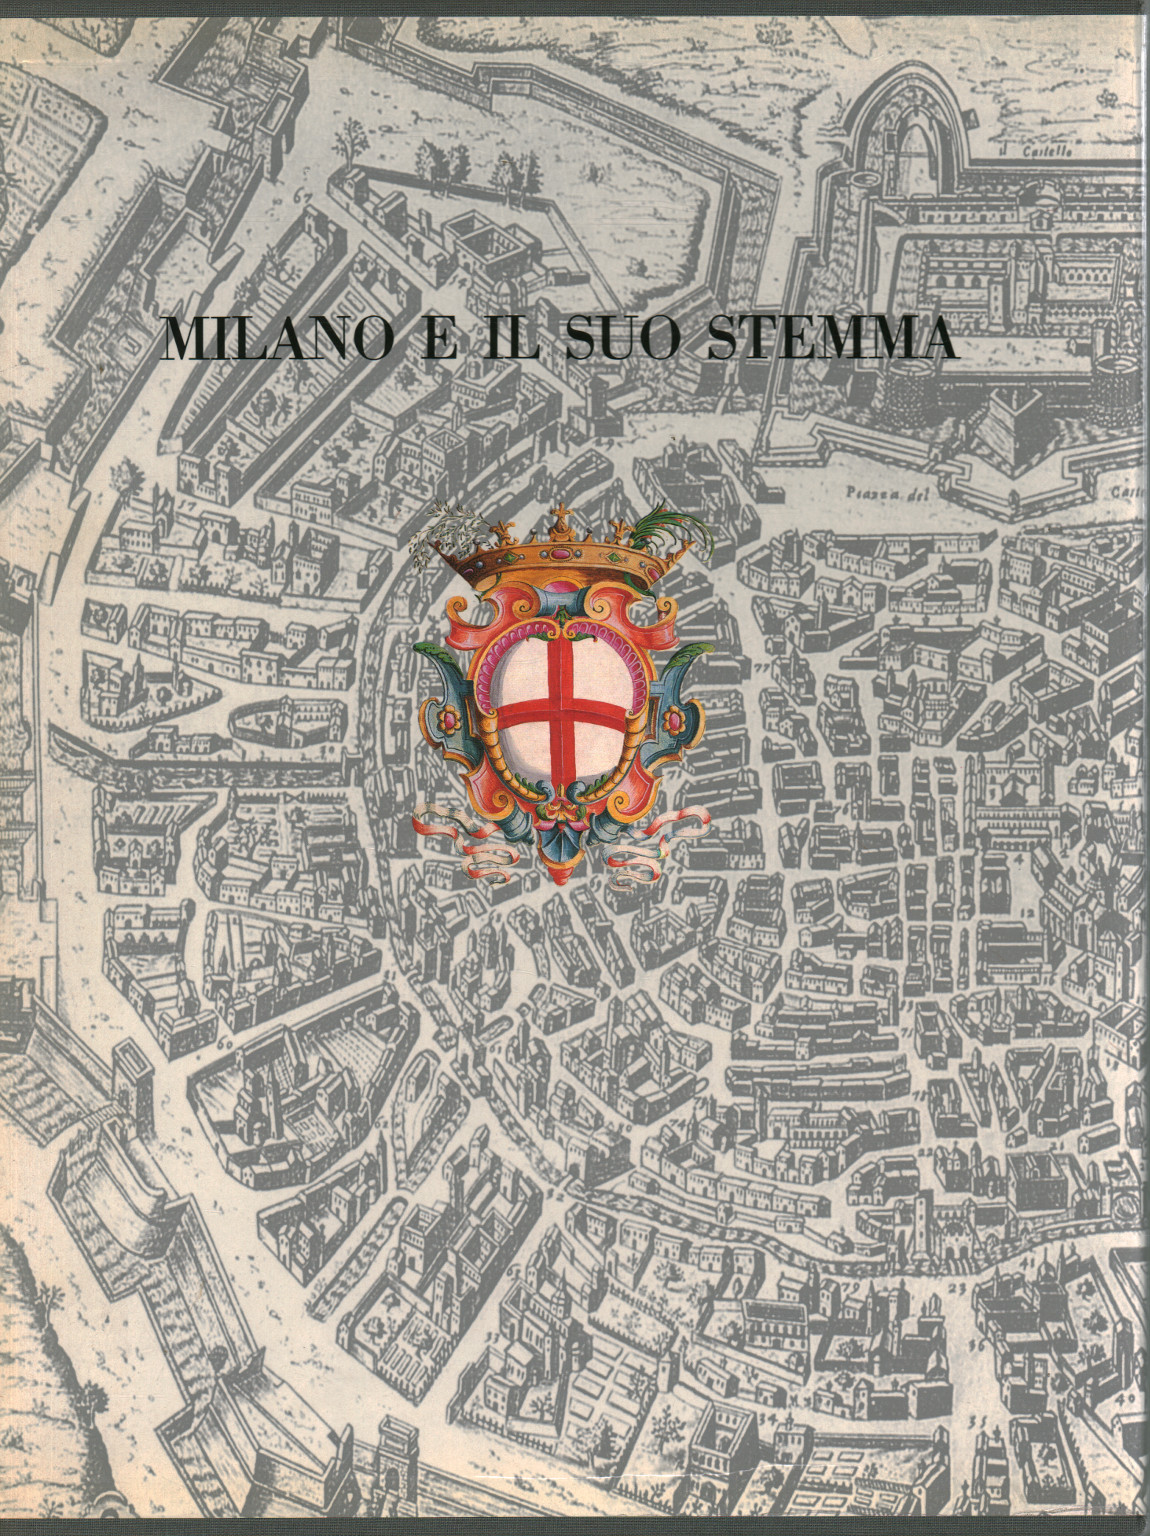 Milán y su escudo, s.a.